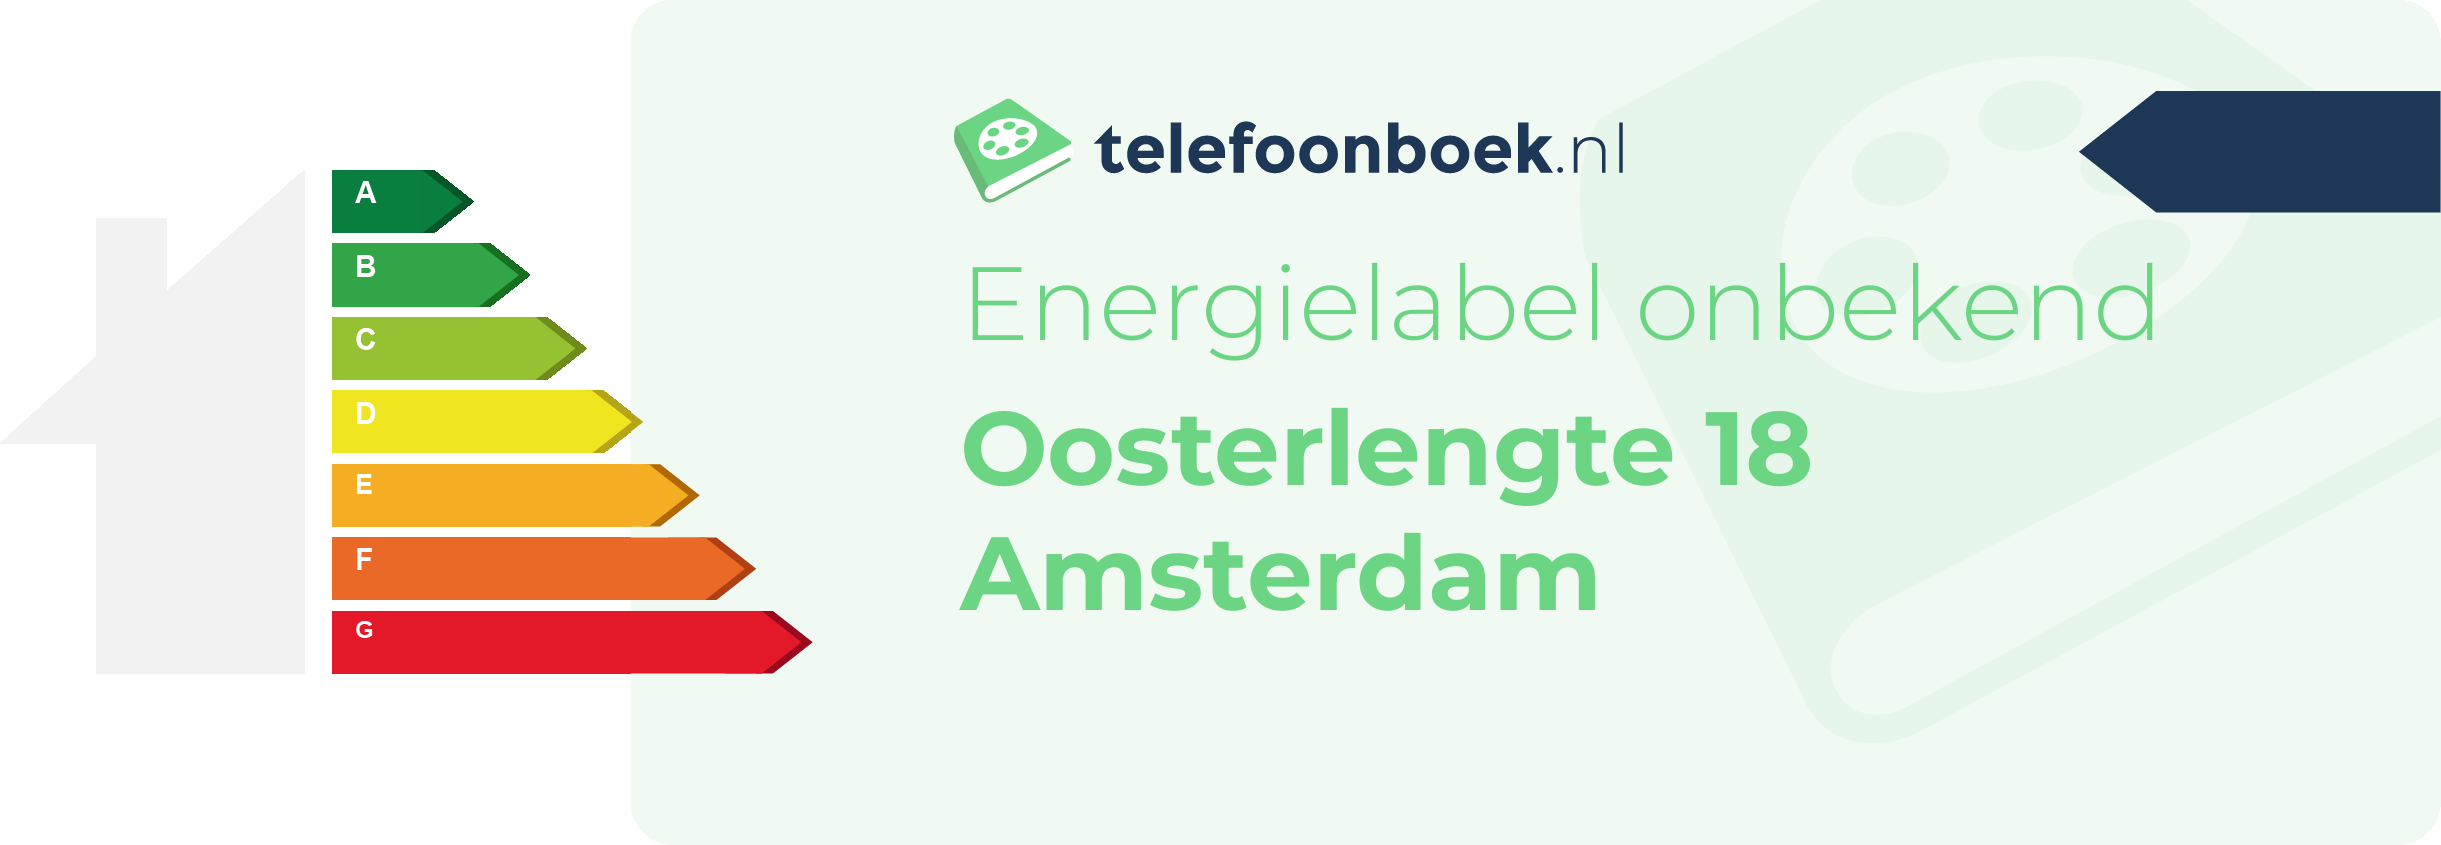 Energielabel Oosterlengte 18 Amsterdam